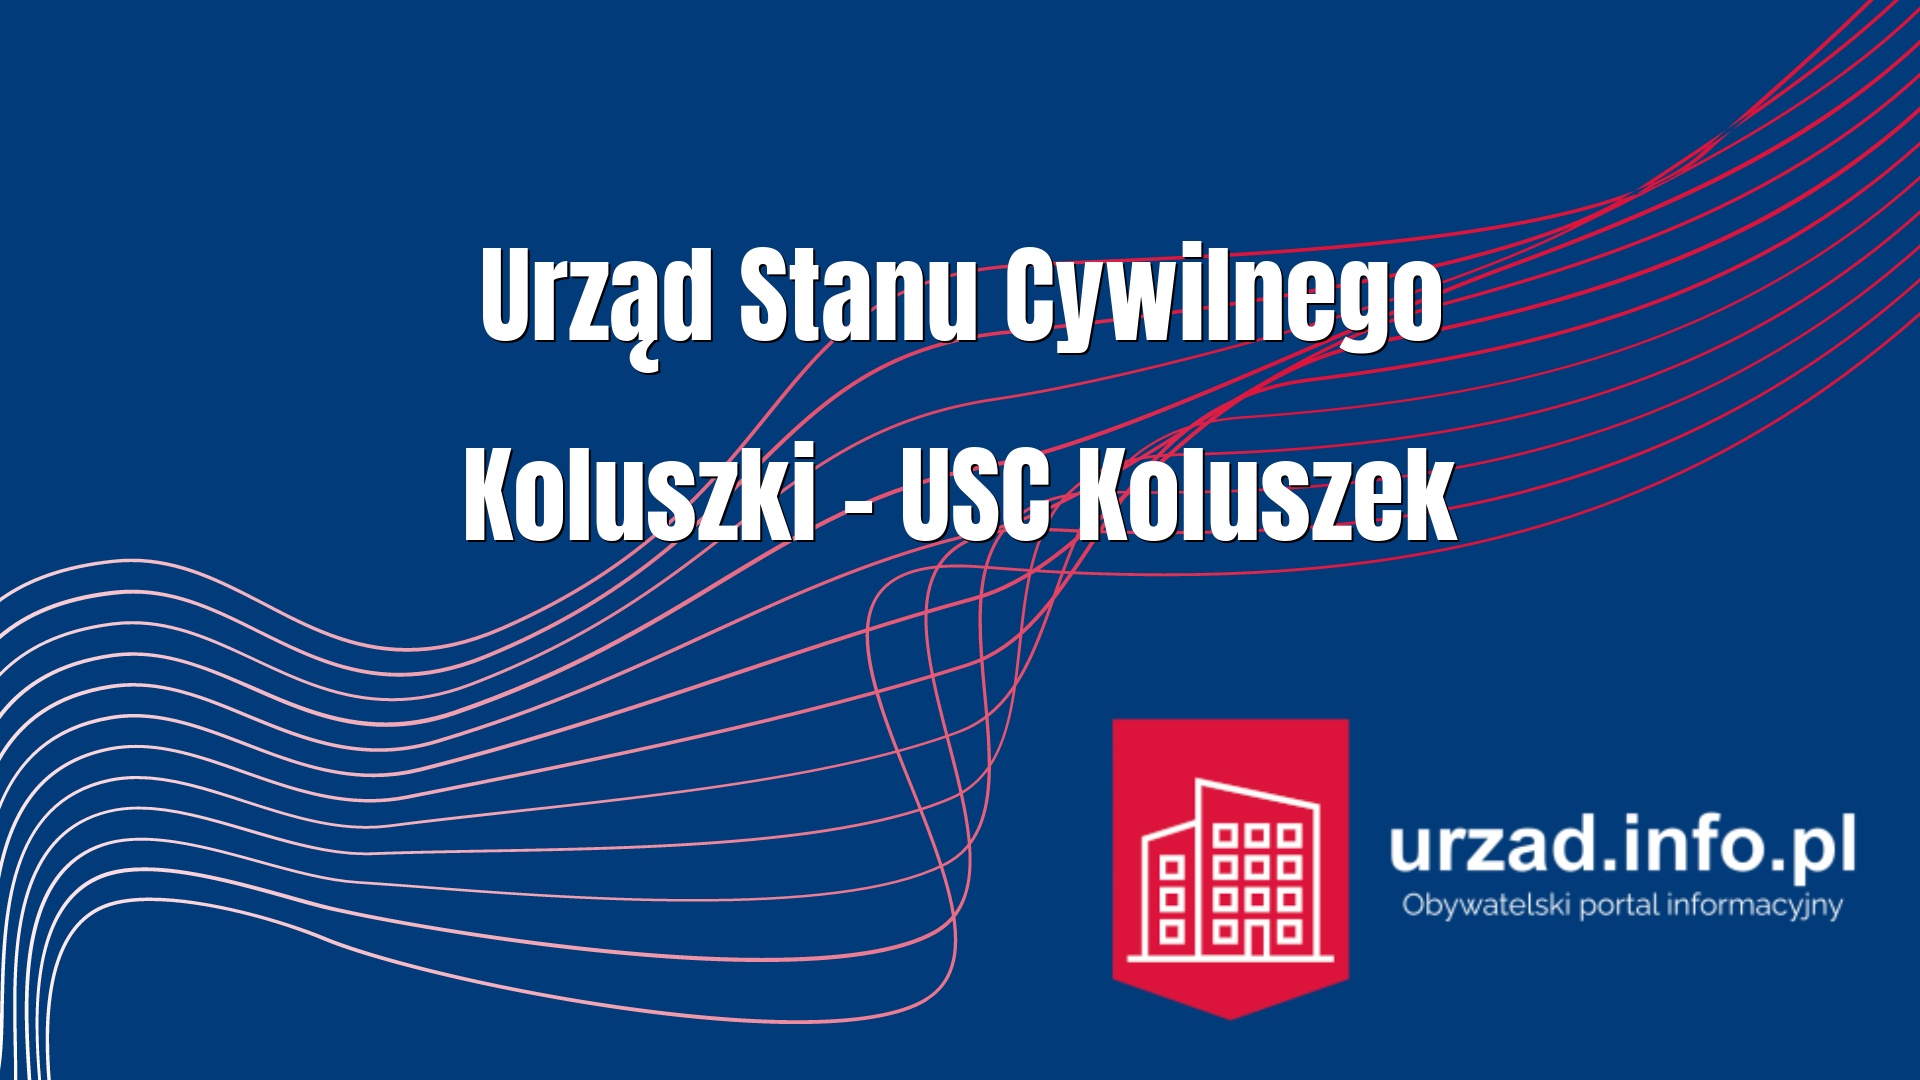 Urząd Stanu Cywilnego Koluszki – USC Koluszek